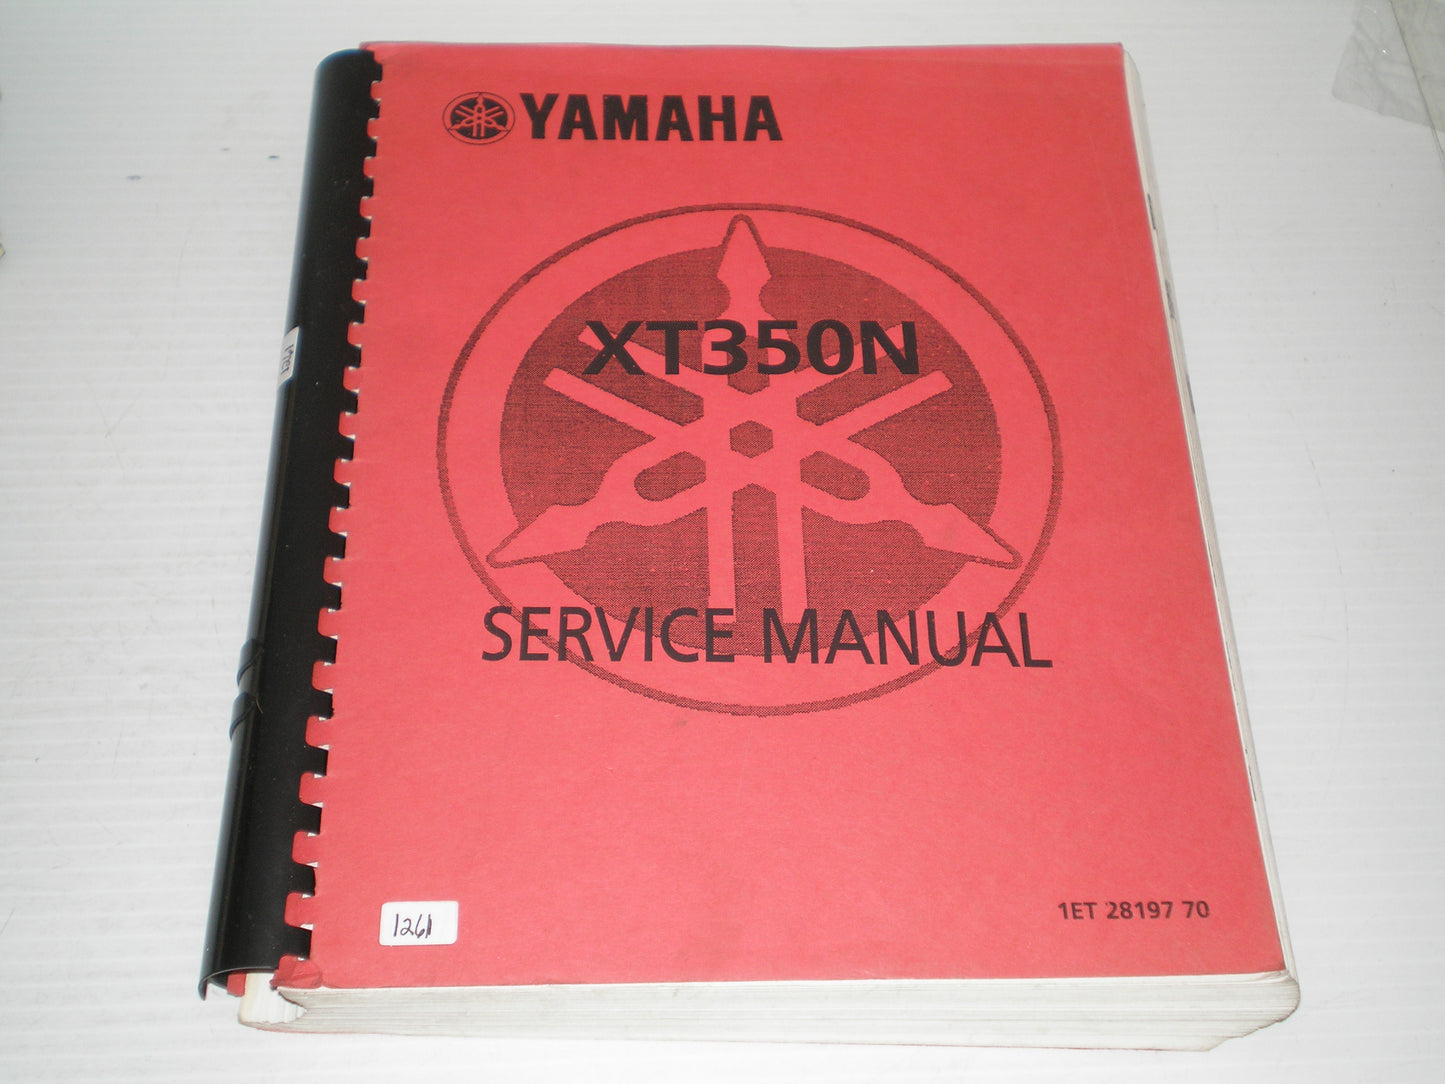 YAMAHA XT350 N  XT350N 1985  Service Manual  1ET-28197-70  #1261